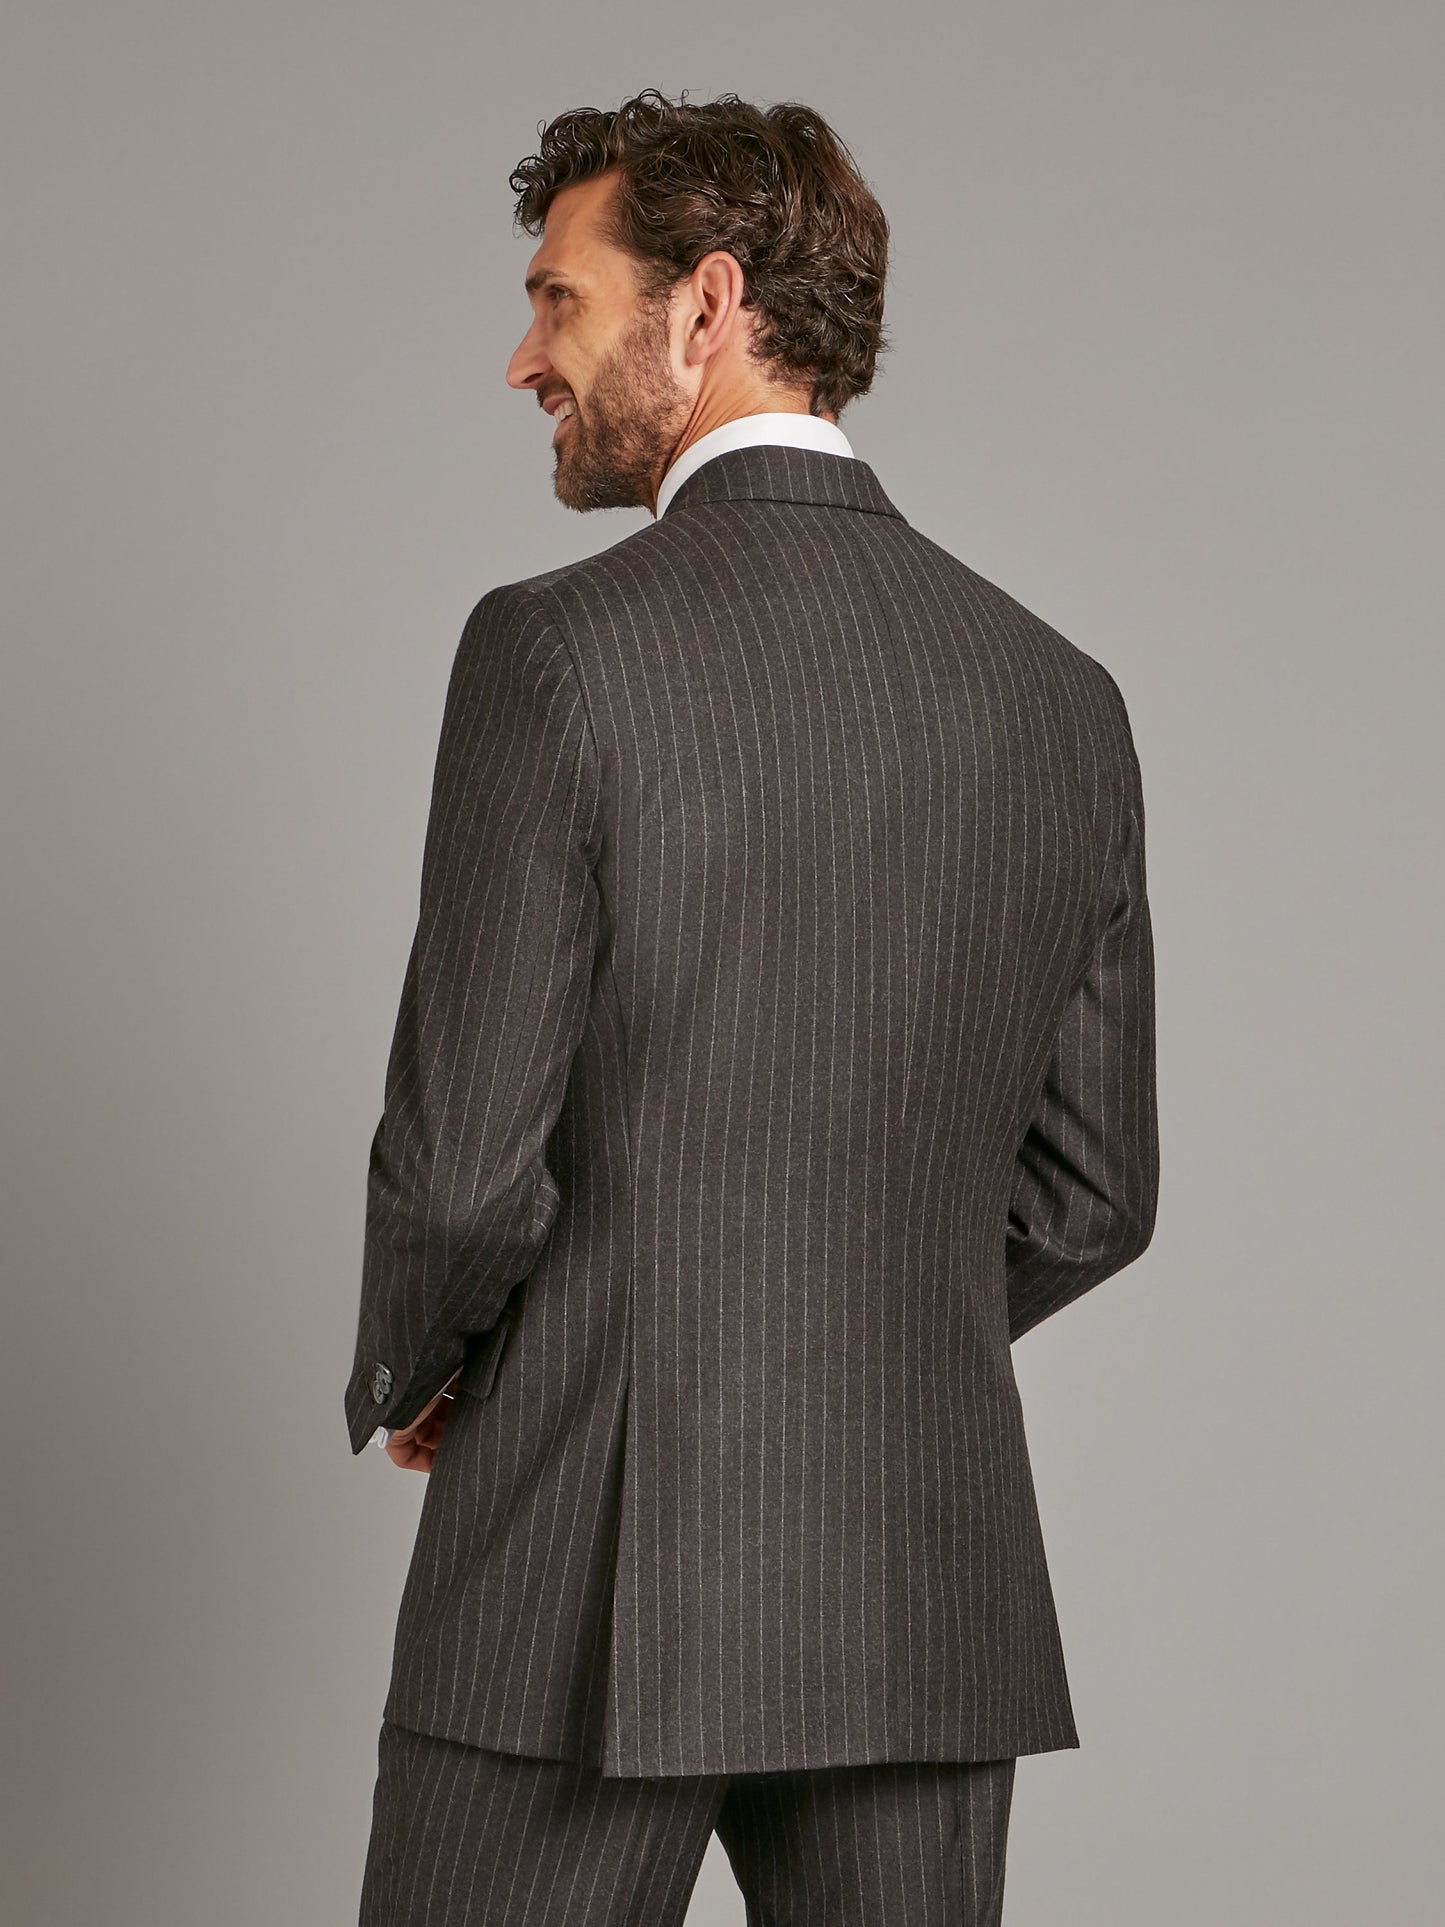 Cadogan Suit Flannel - Chalk-stripe Charcoal